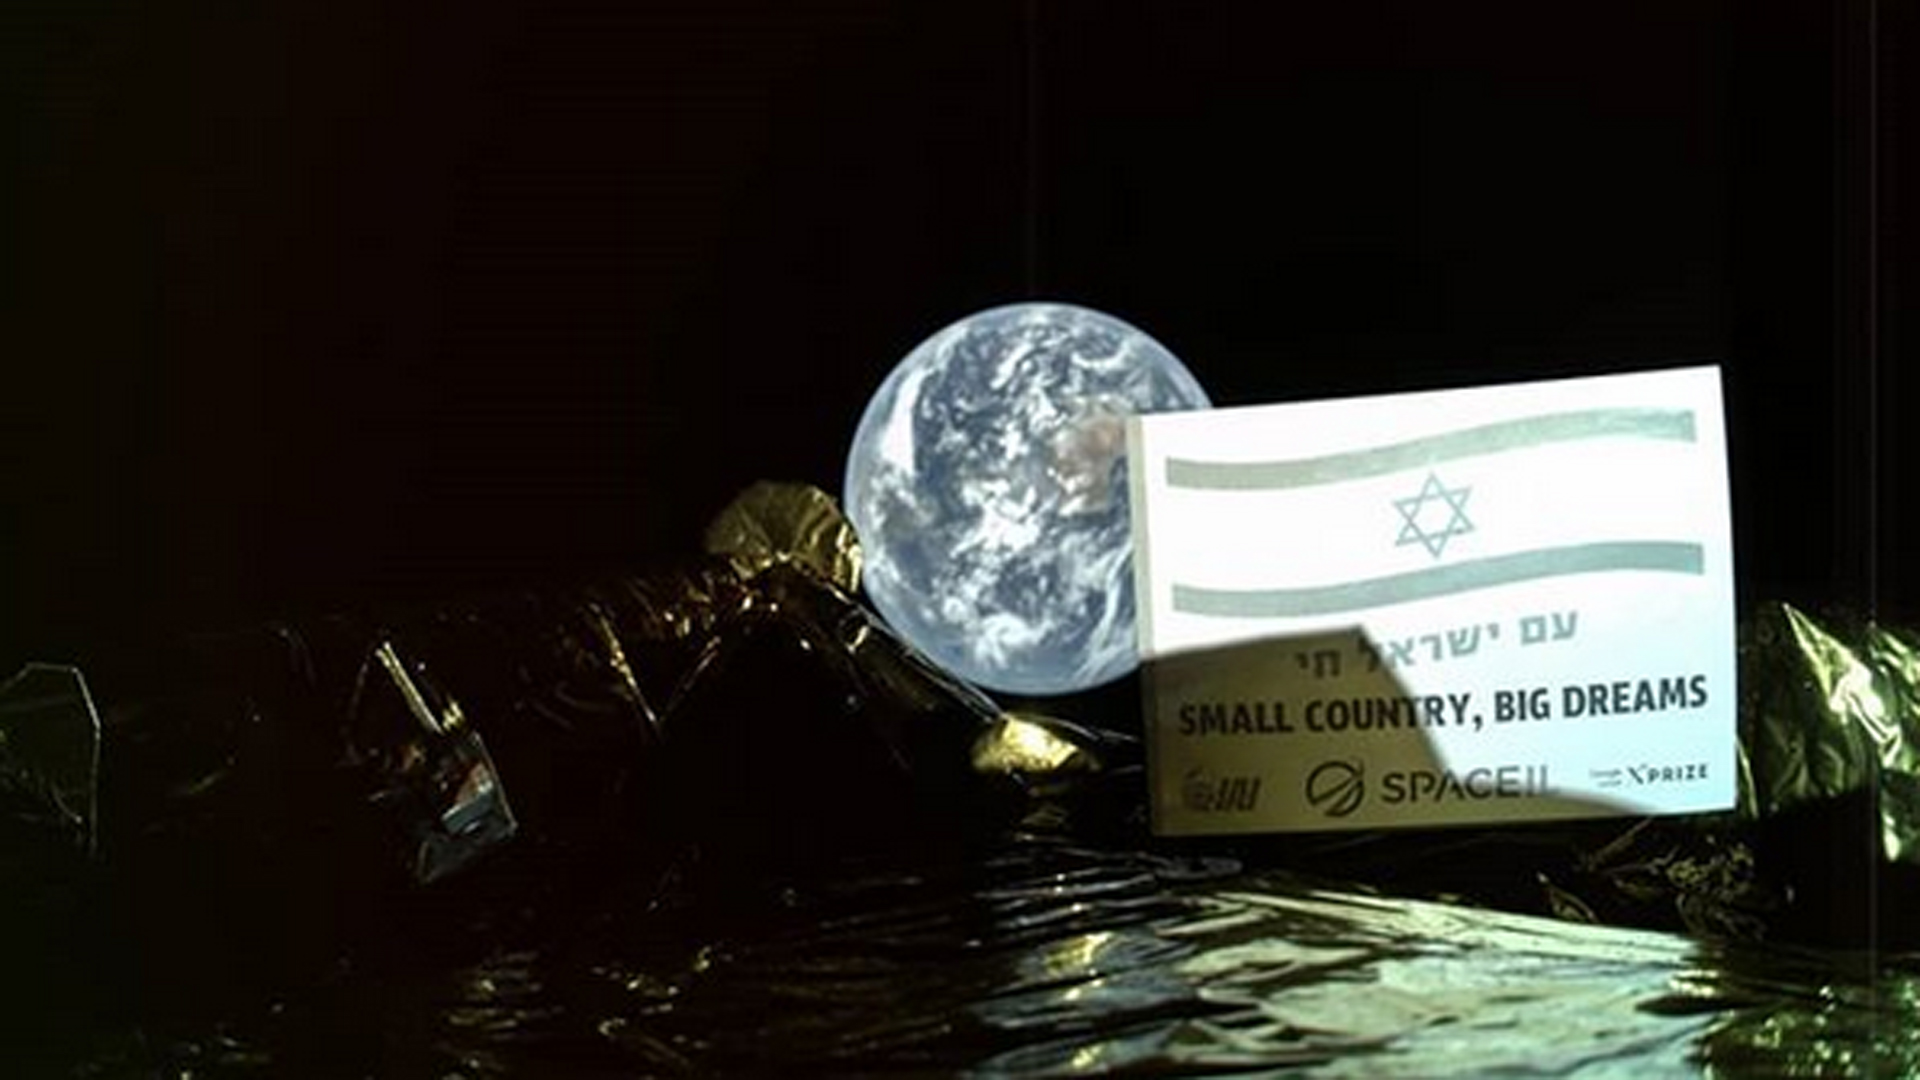 Auf dem Selfie ist die Hülle der Sonde, ein Bild der israelischen Flagge mit der hebräischen Aufschrift „Das Volk Israel lebt“ sowie im Hintergrund die Erde zu sehen. Der englische Satz auf dem Bild lautet: „Kleines Land, große Träume“.